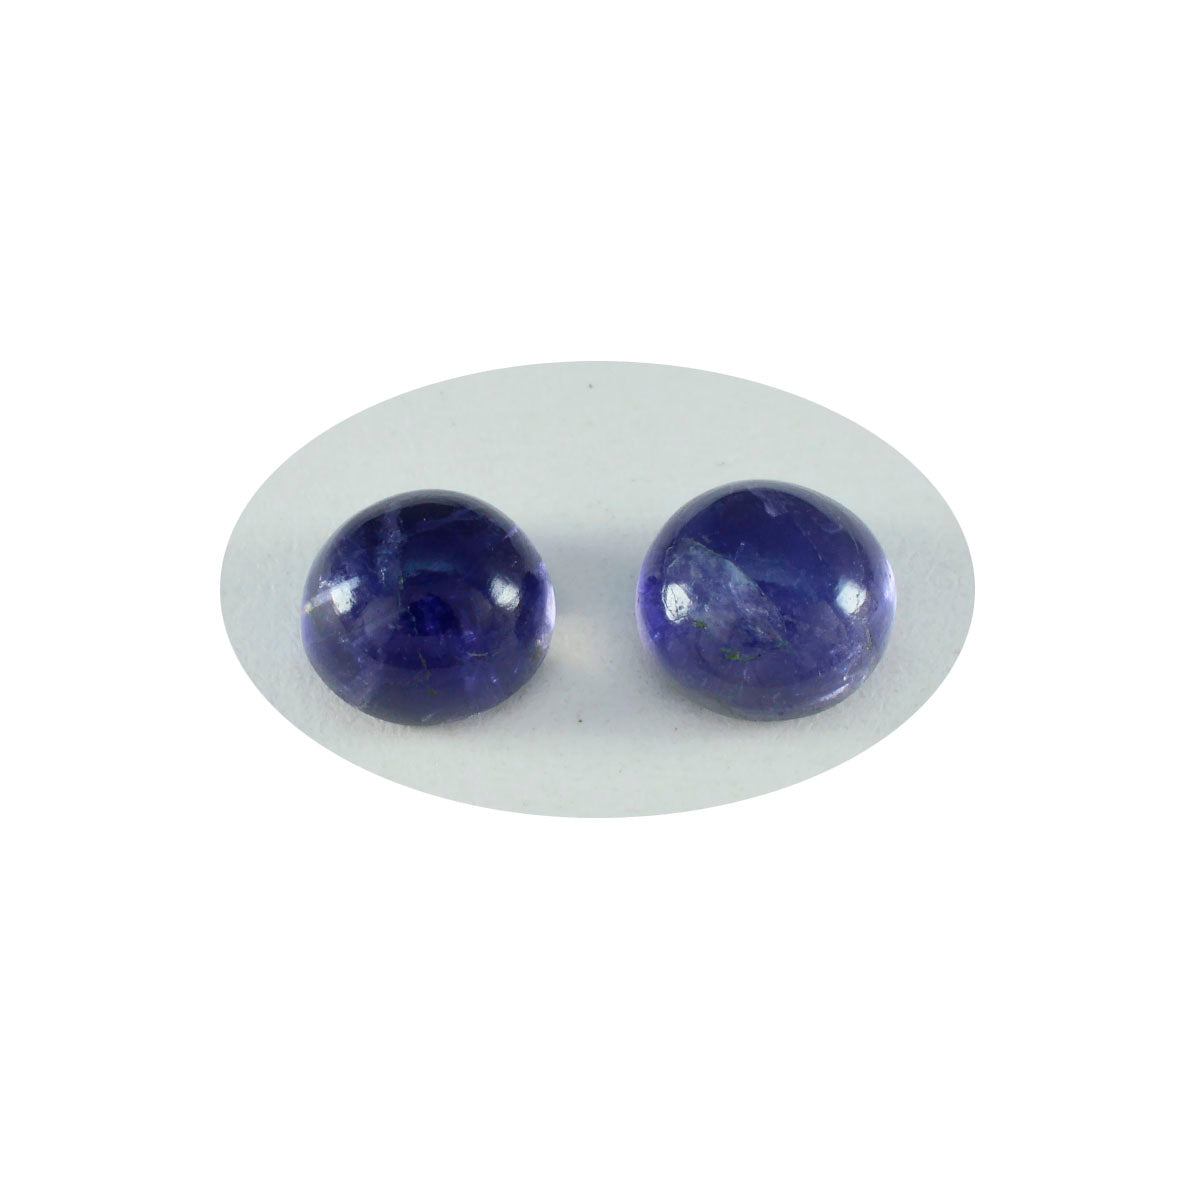 riyogems 1шт синий иолит кабошон 11x11 мм круглая форма, хорошее качество драгоценный камень